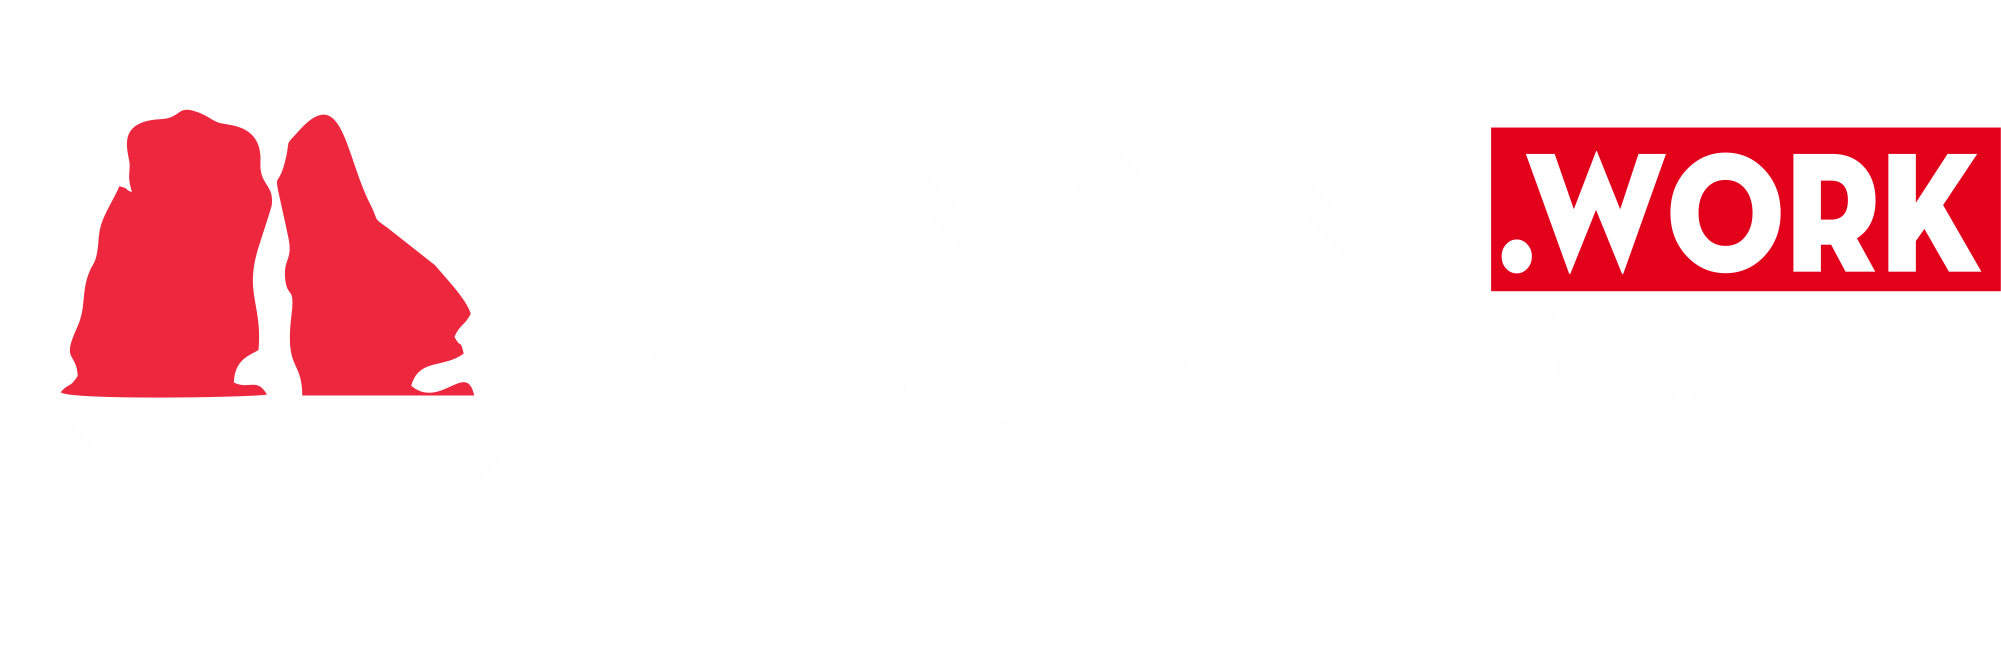 Logo Quang Ninh Work Am Ban